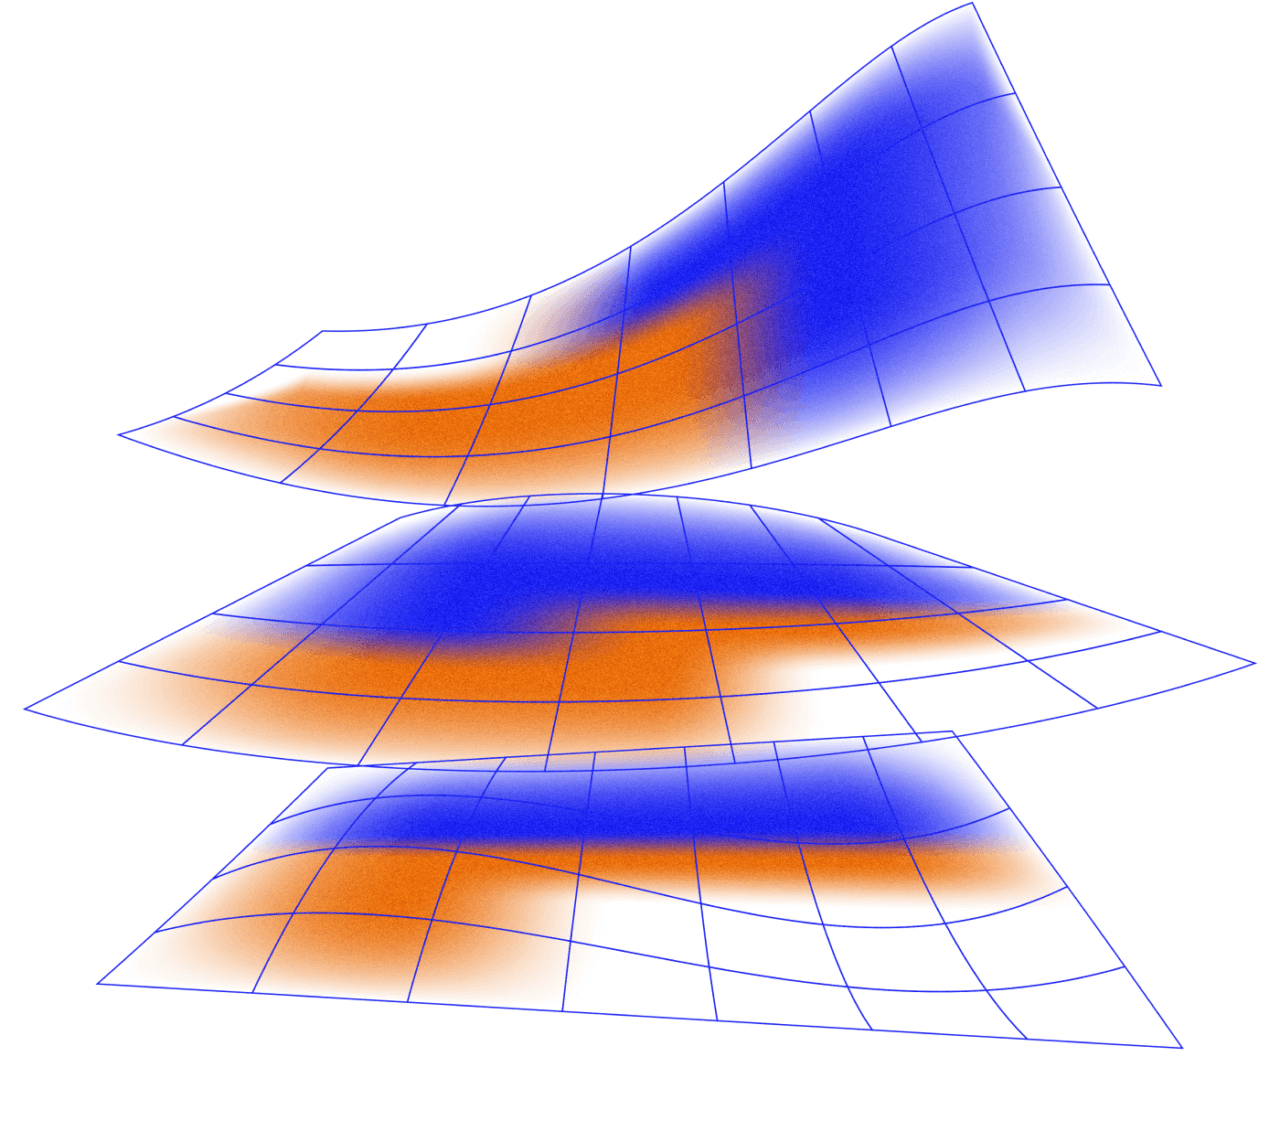 Een abstracte afbeelding waarin meerdere platte lagen een systeem vormen.